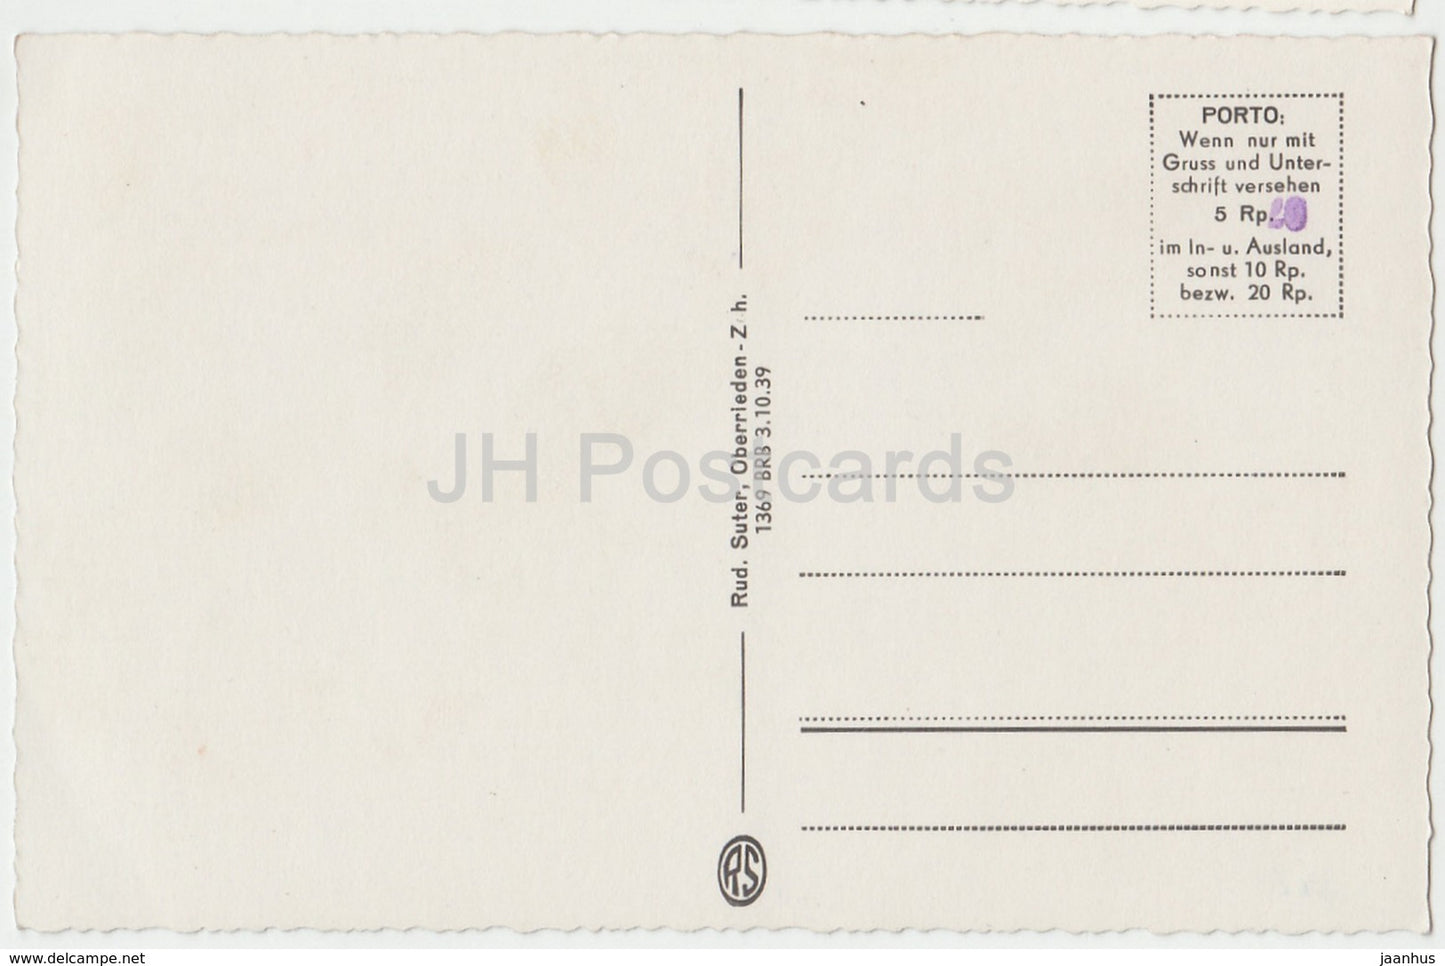 Coire - 1737 - Suisse - cartes postales anciennes - inutilisées